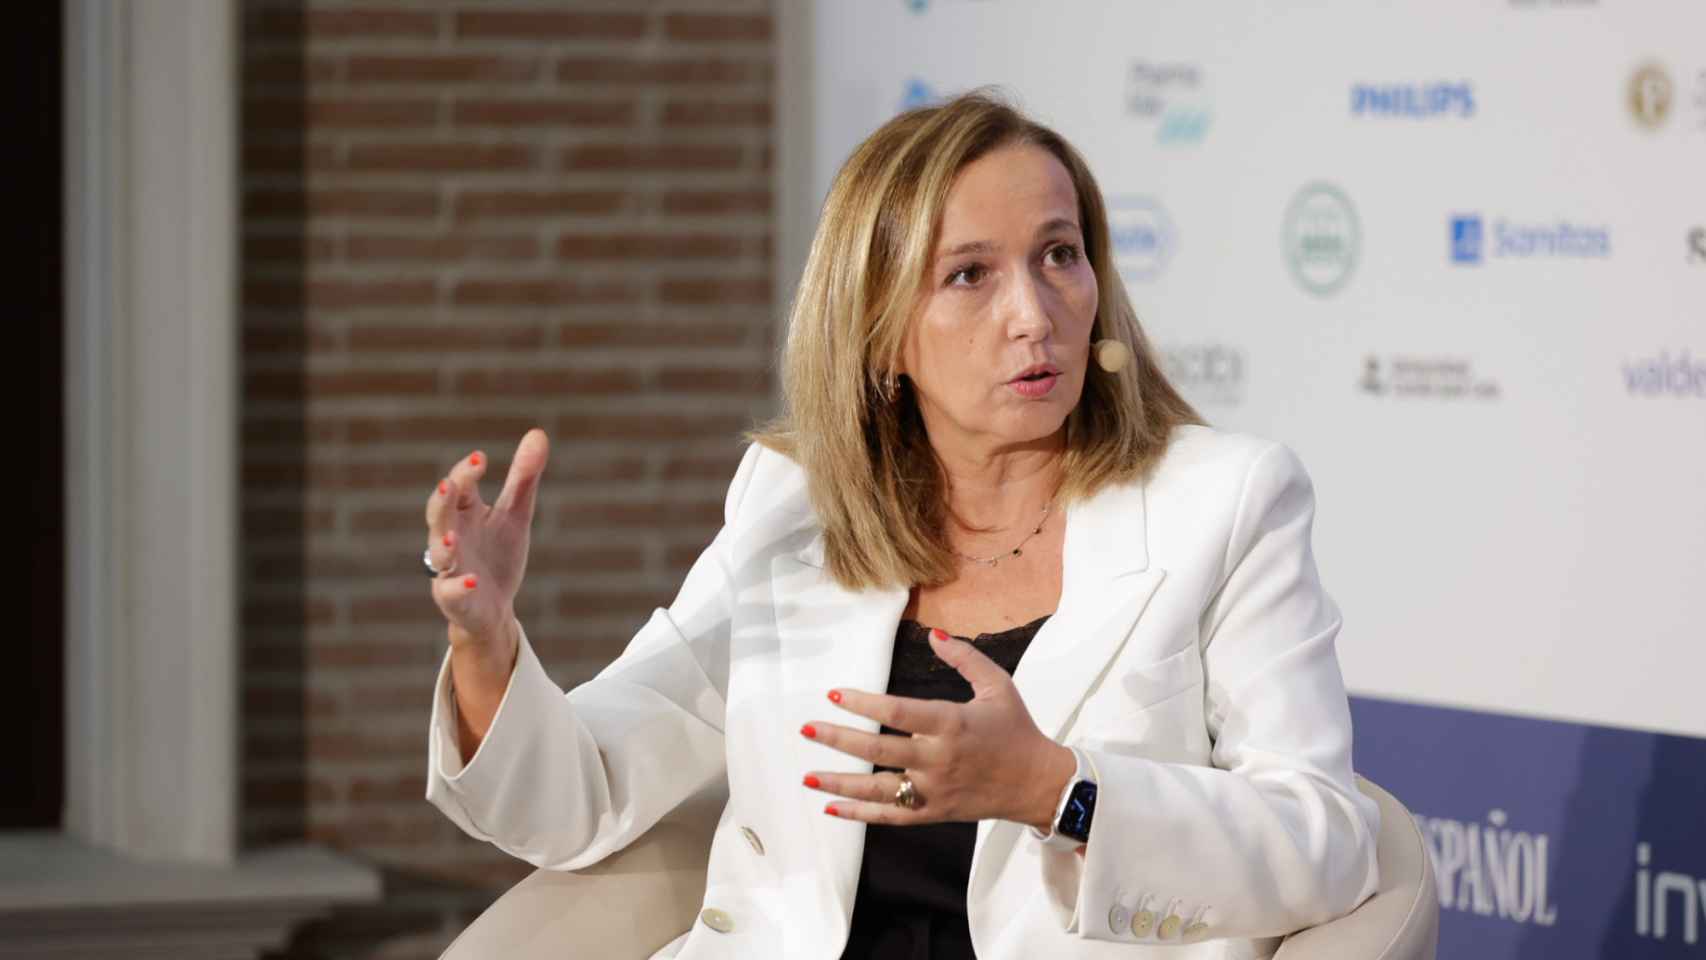 María Vila, presidenta de Fenin, durante su intervención bajo el título 'Tecnología sanitaria', en la tercera jornada del III Simposio del Observatorio de la Sanidad.